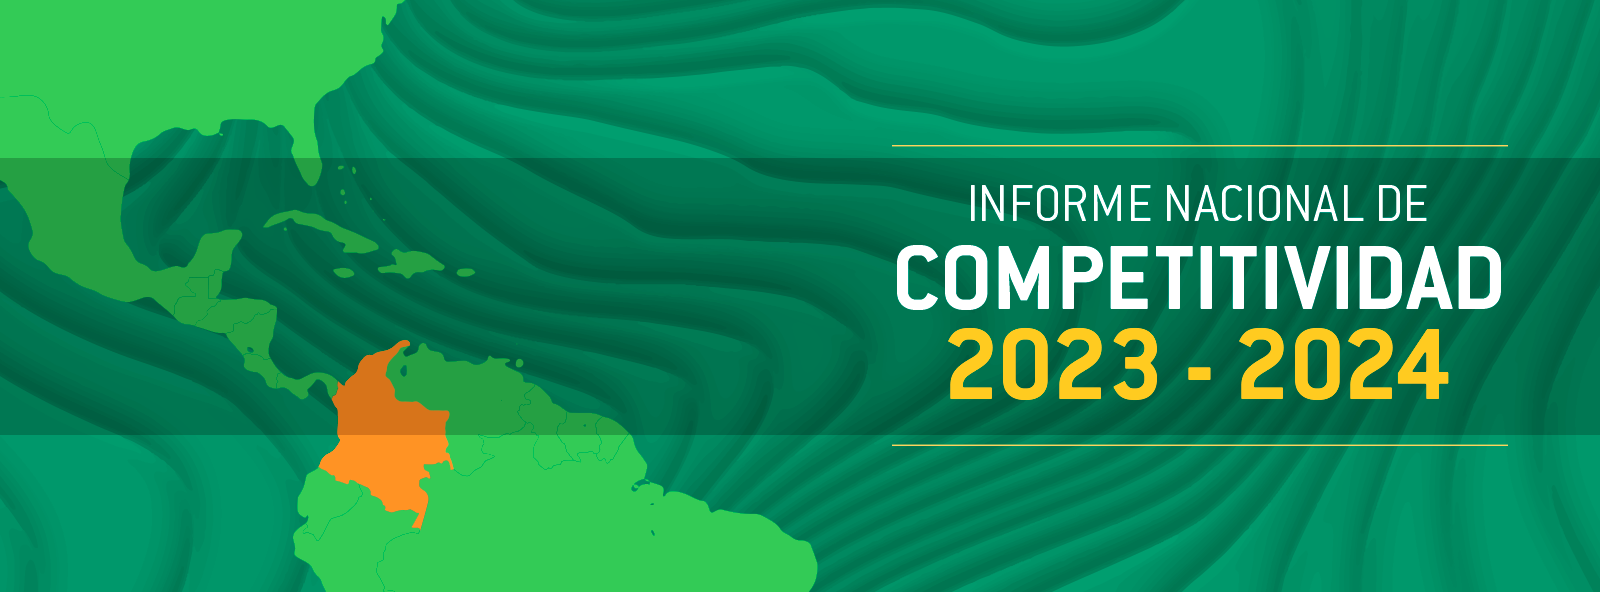 Informe Nacional de Competitividad 2023-2024